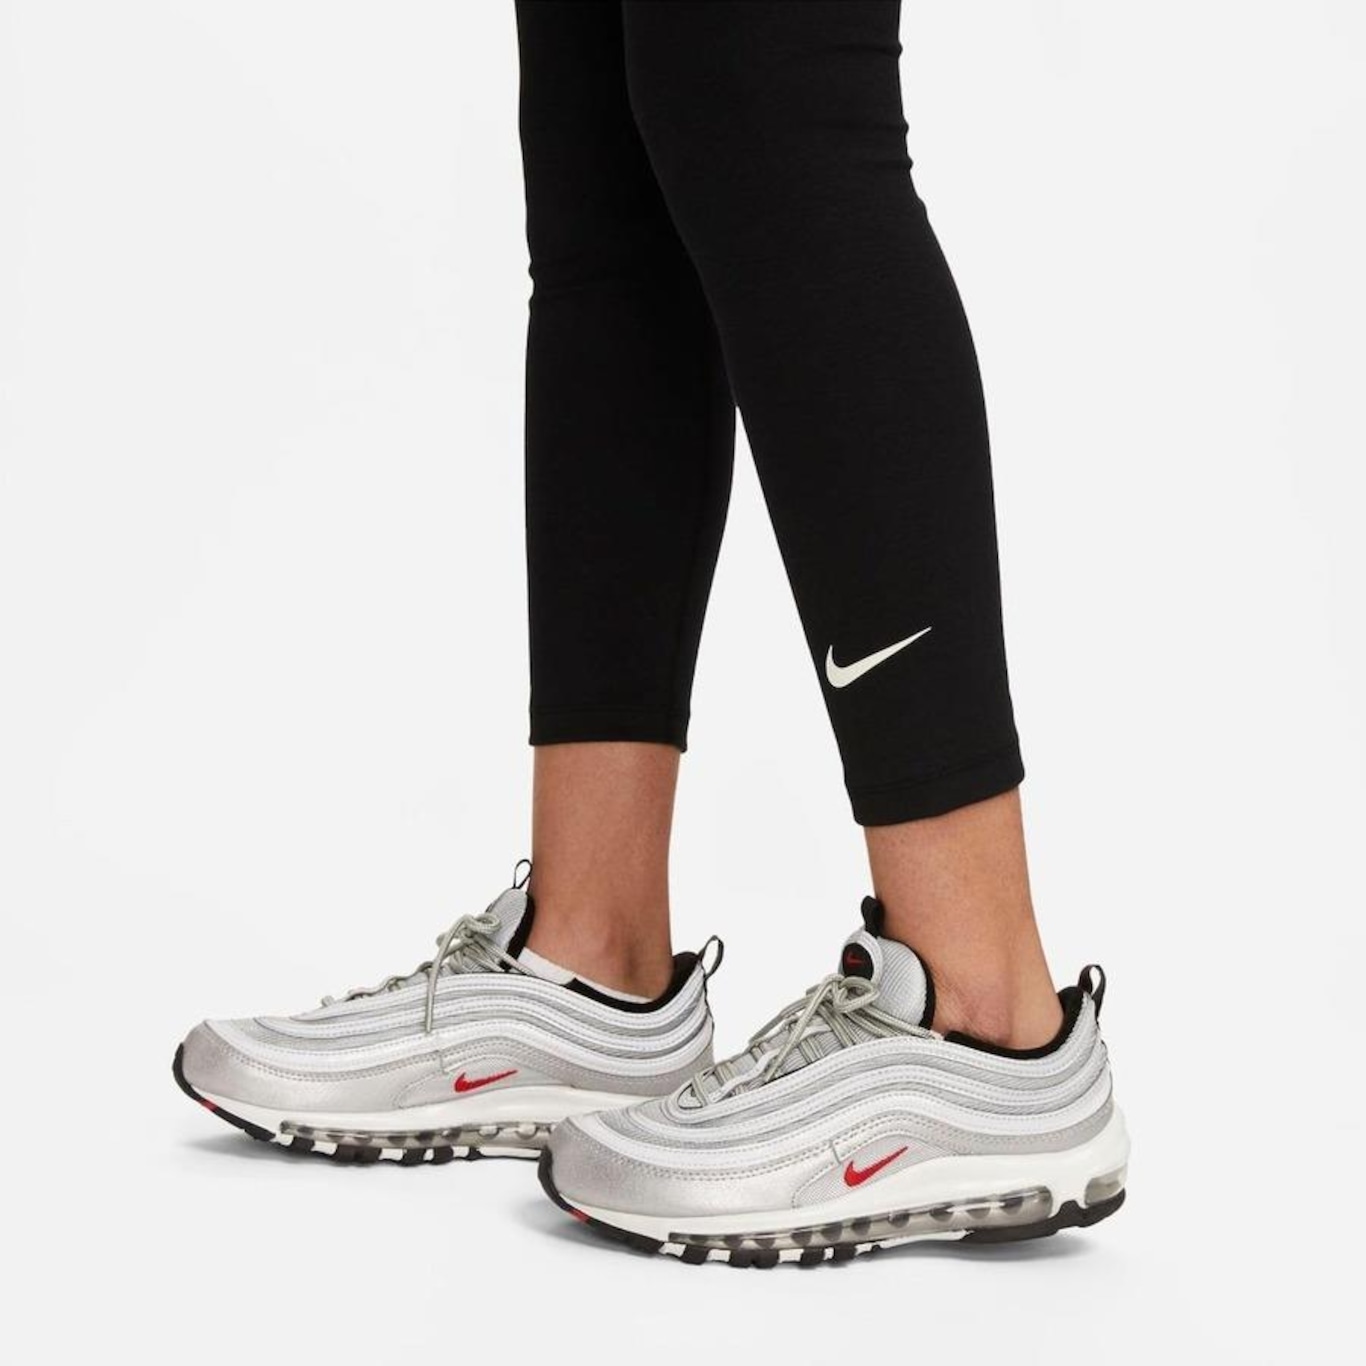 Calça Legging Nike Sportswear - Feminina em Promoção